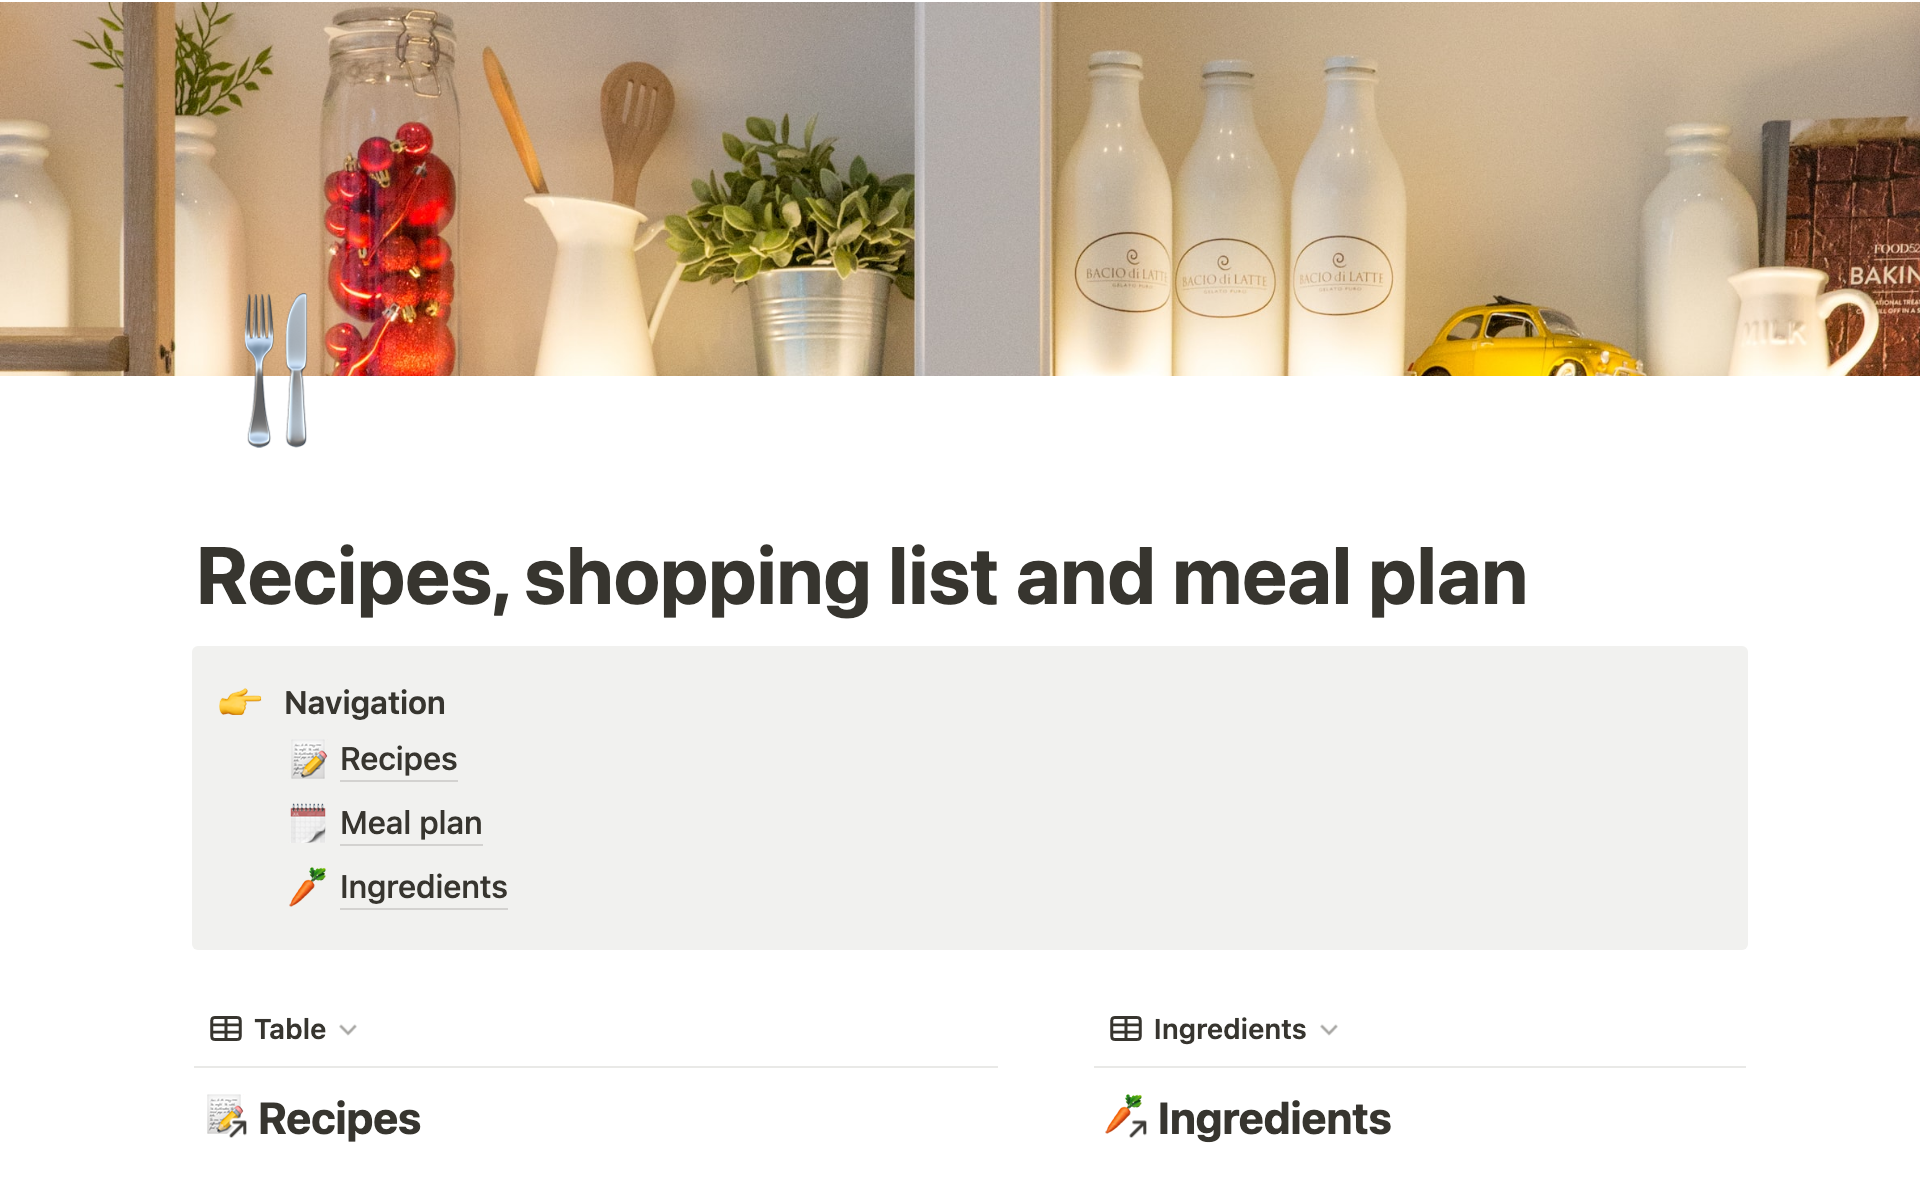 Uma prévia do modelo para Recipes, shopping list and meal plan